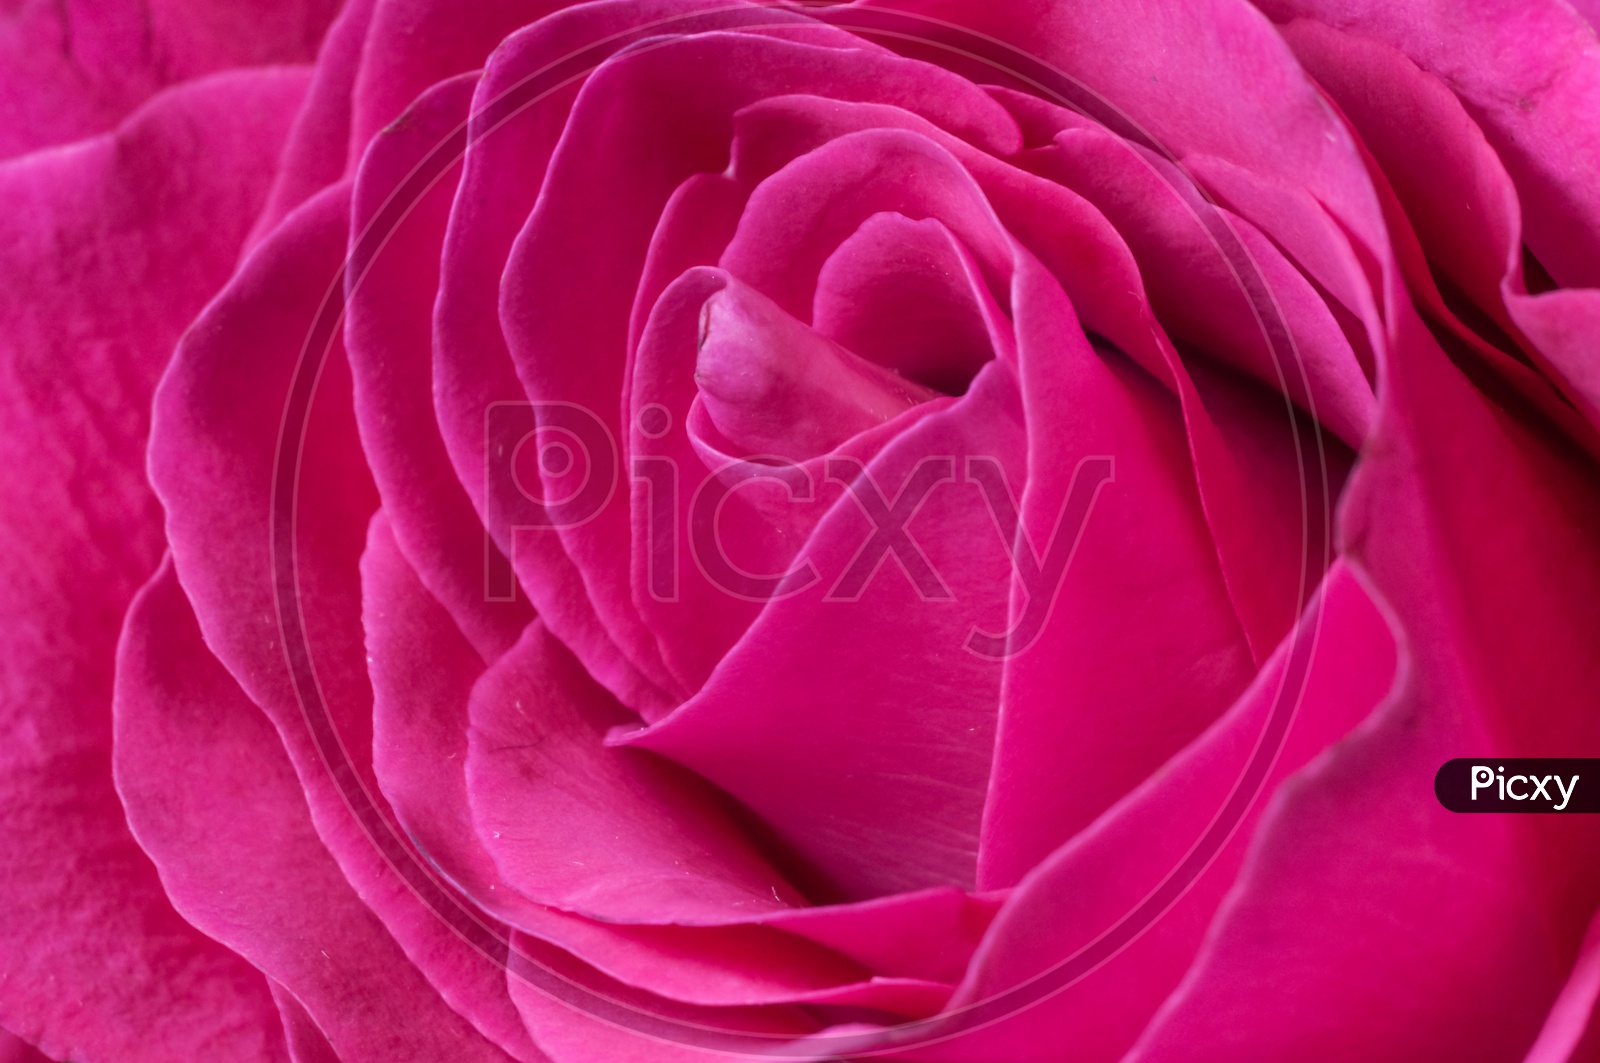 Petals of a fresh bright red rose closeup